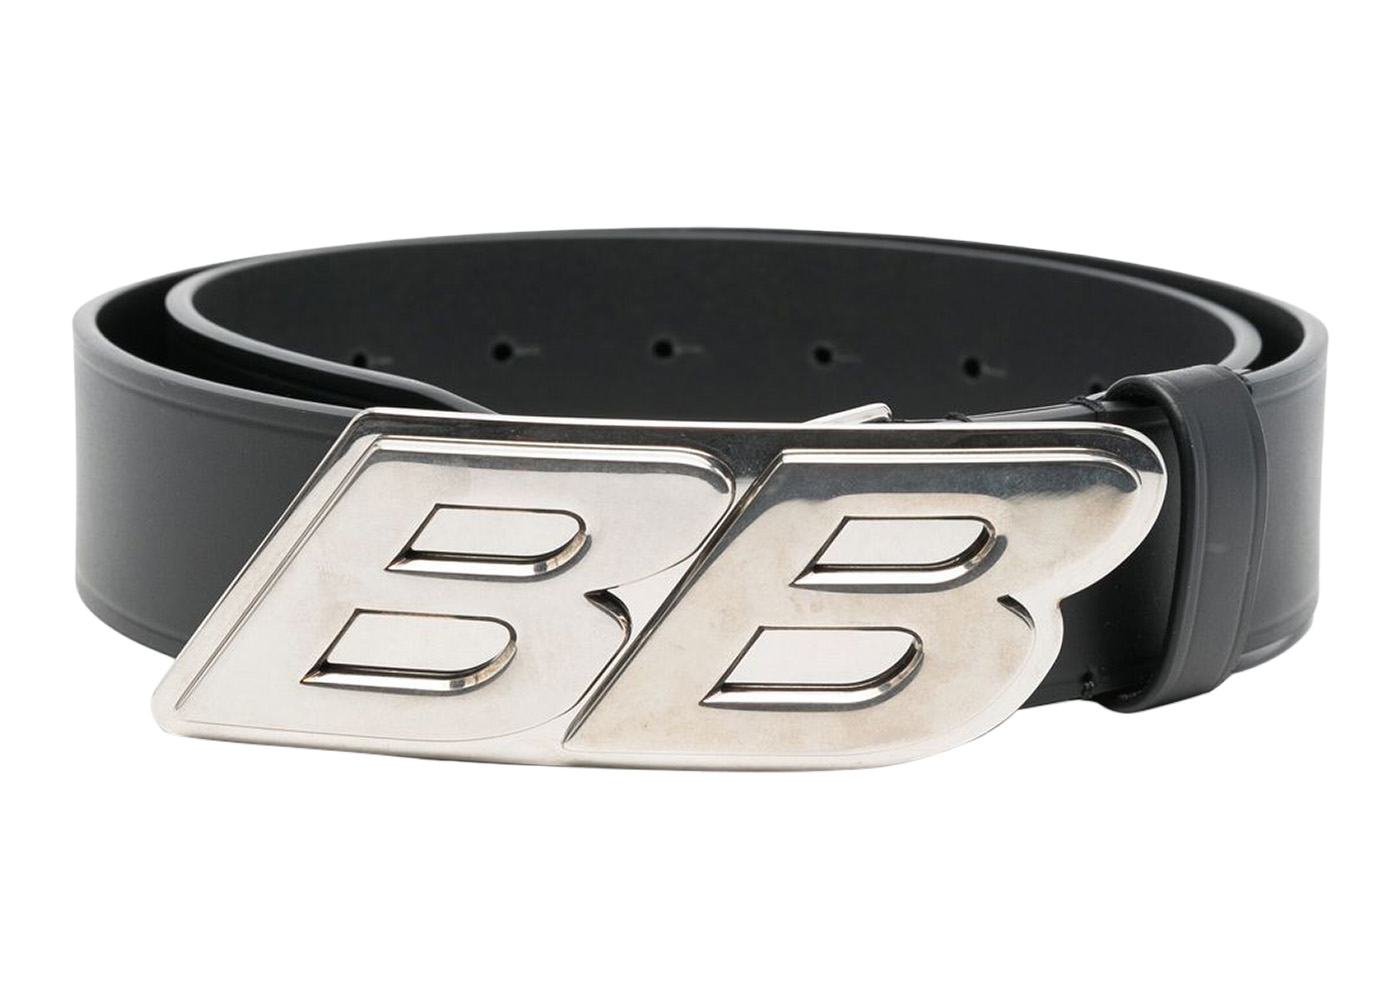 Balenciaga Silver Tool Bracelet Release  Hypebeast